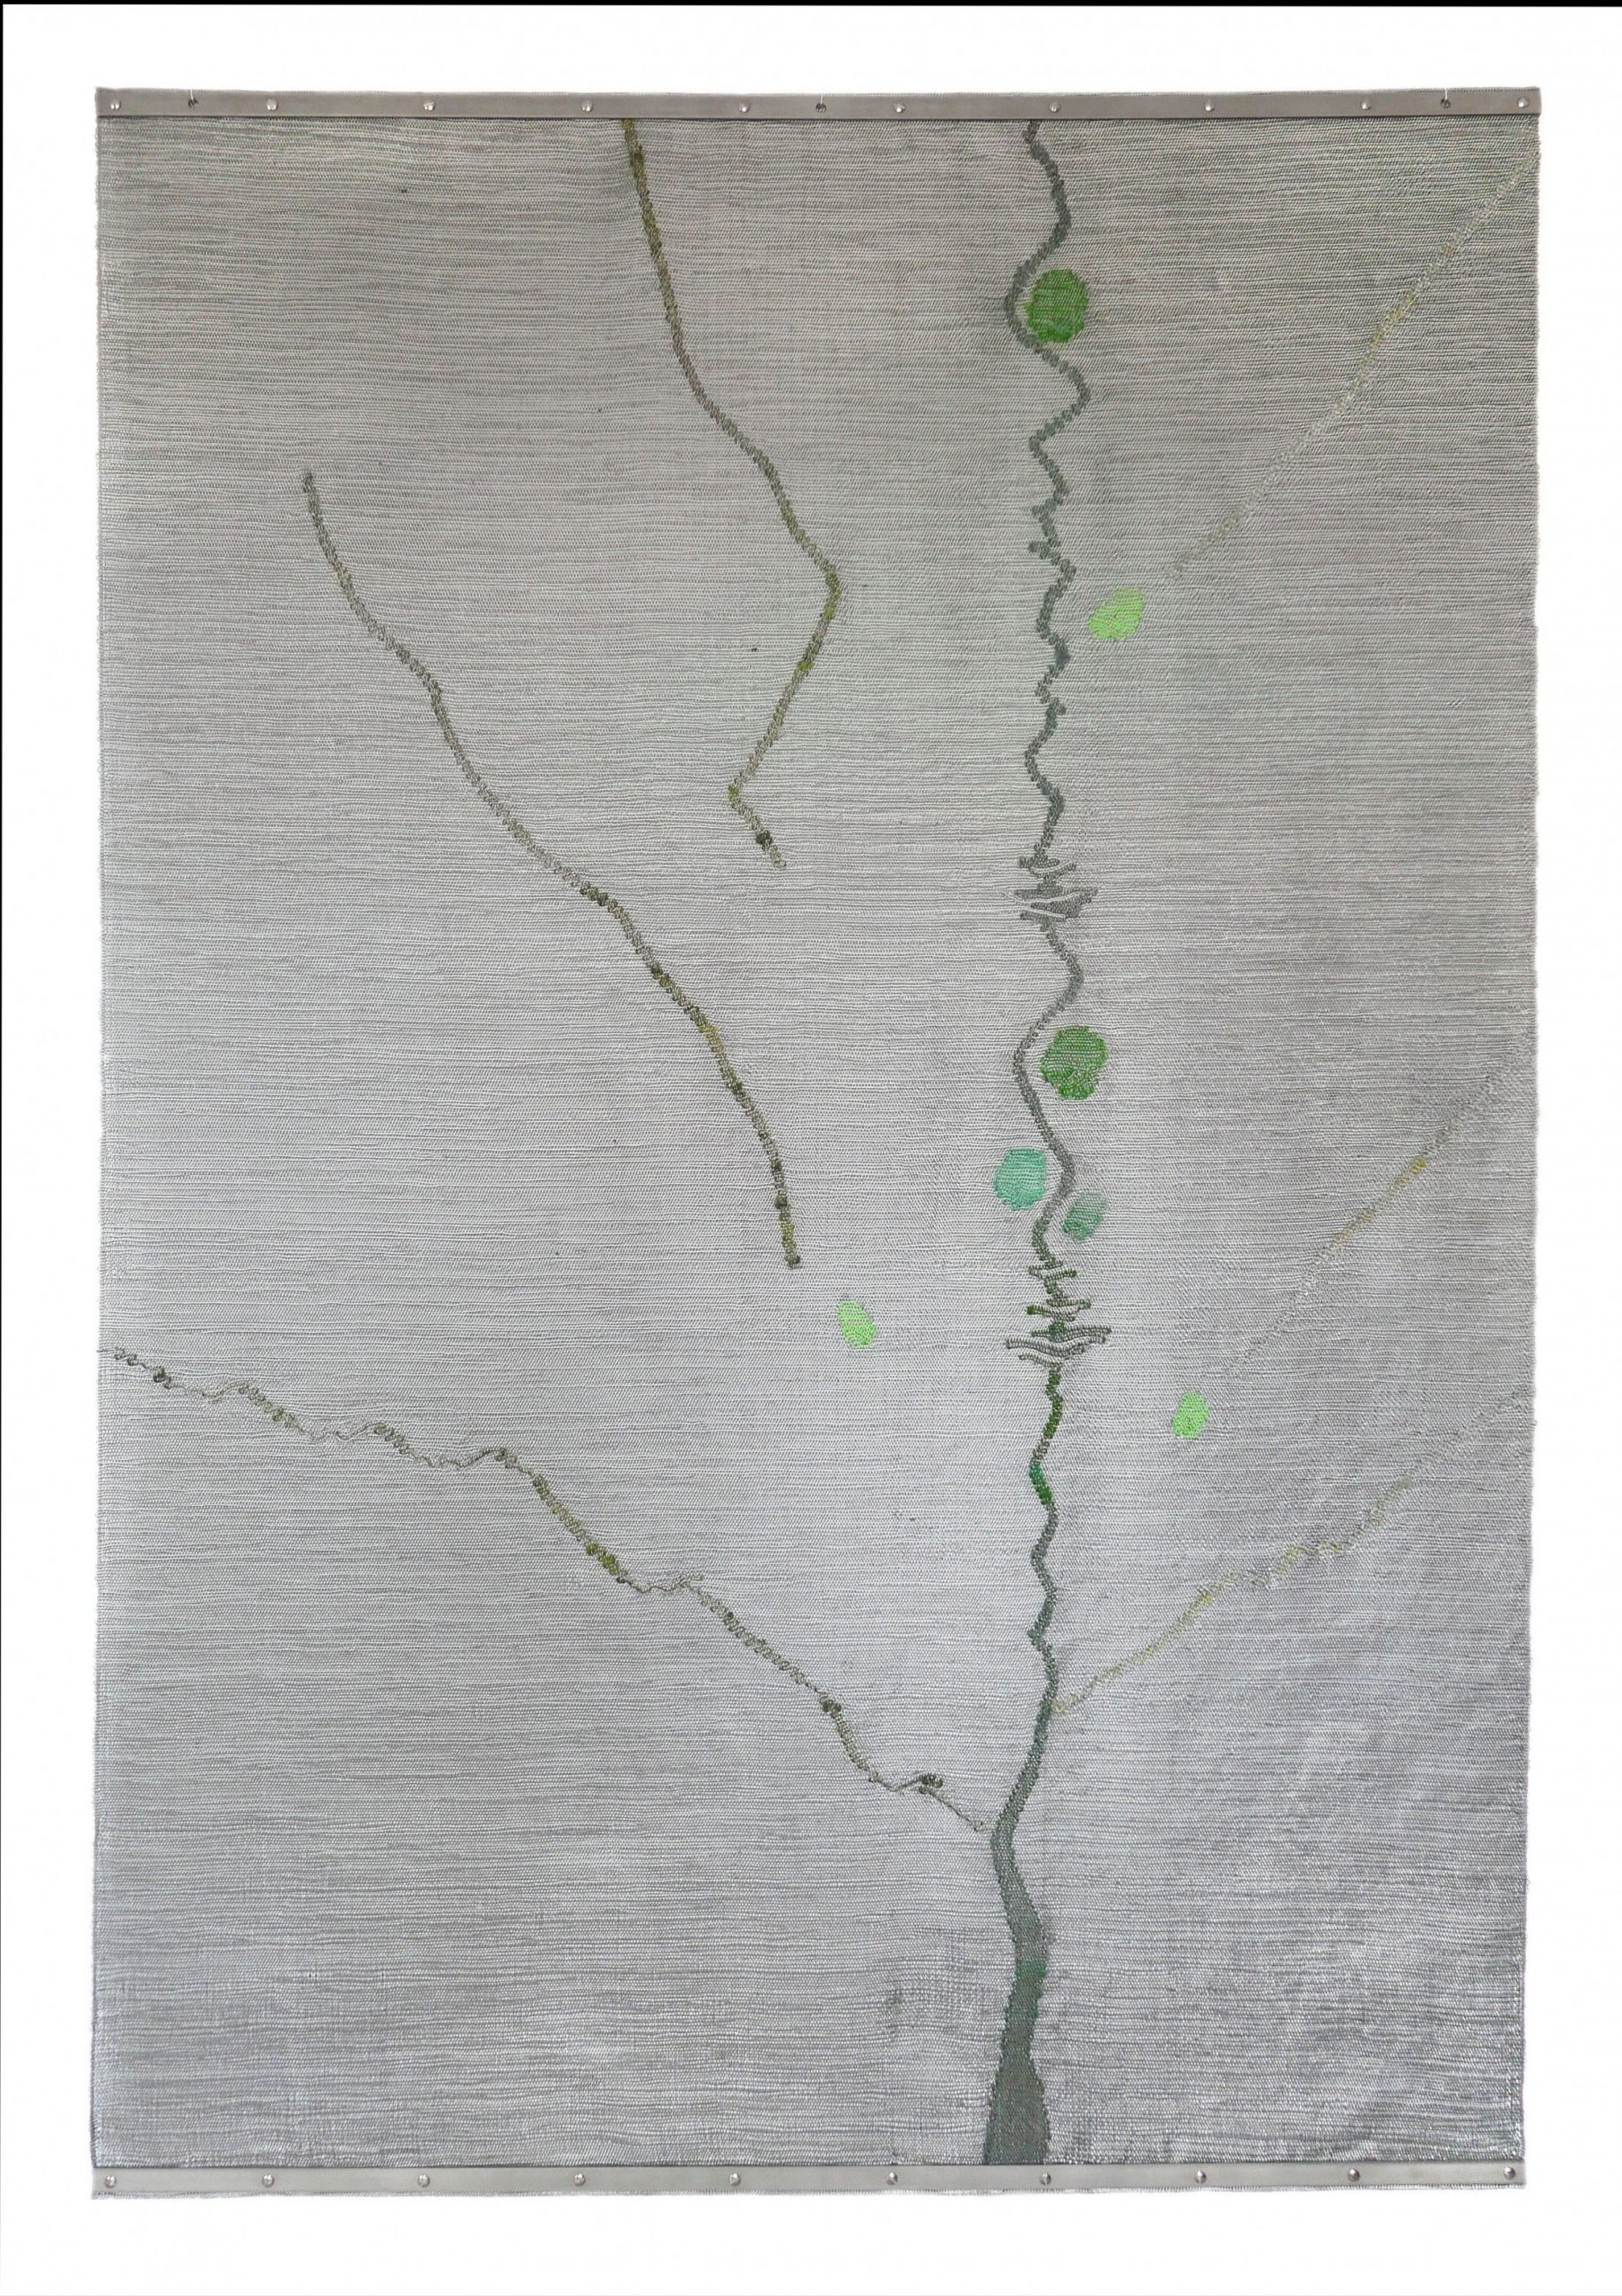 Simone Prouvé, panneau 020515, 2015, inox, fibre de verre, carbone, Kanekalon® et aramide, 181 x 119 cm